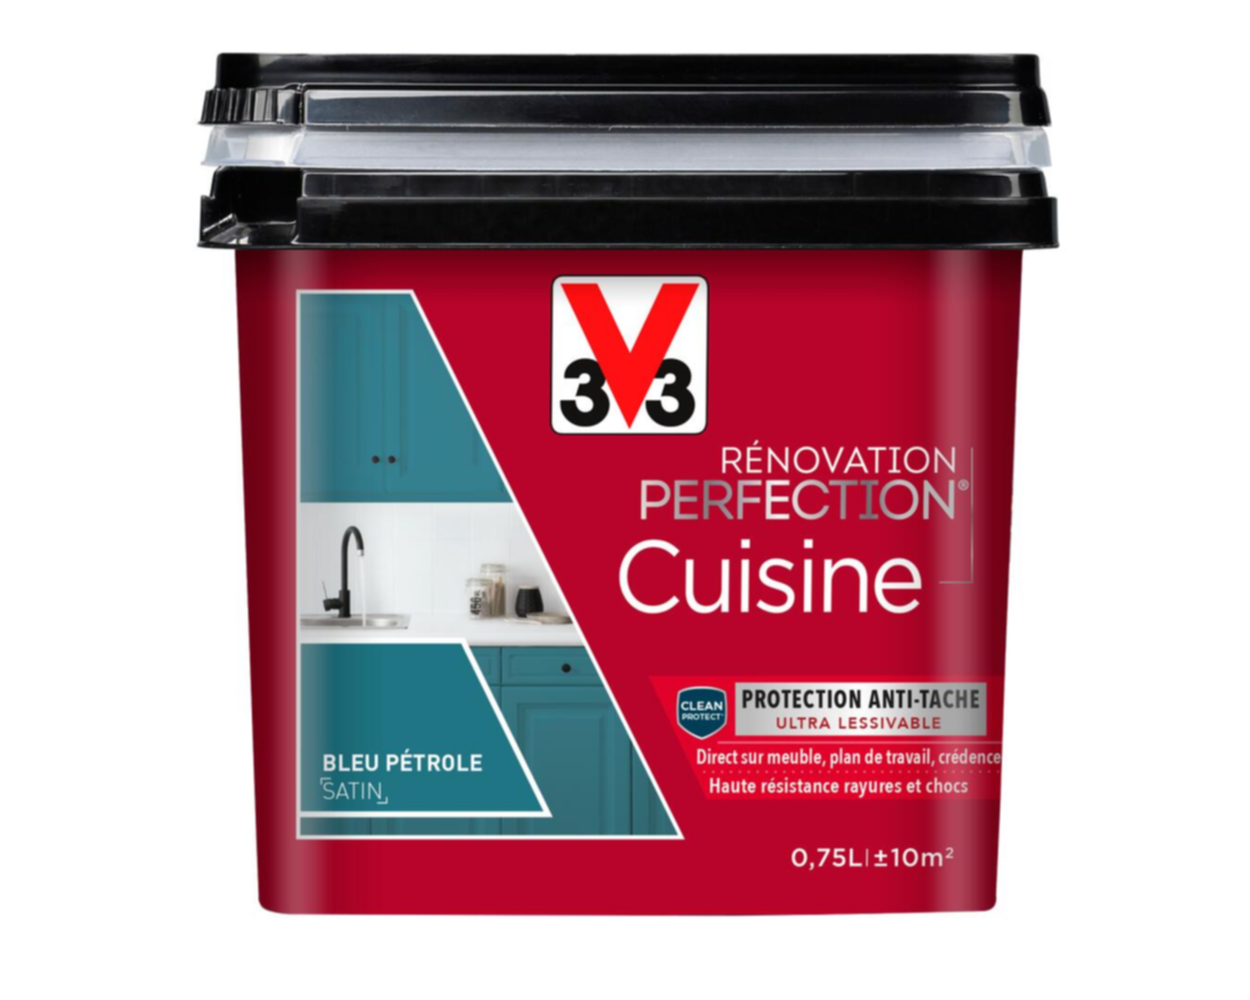 Peinture rénovation cuisine Perfection bleu pétrole satin 0,75l - V33